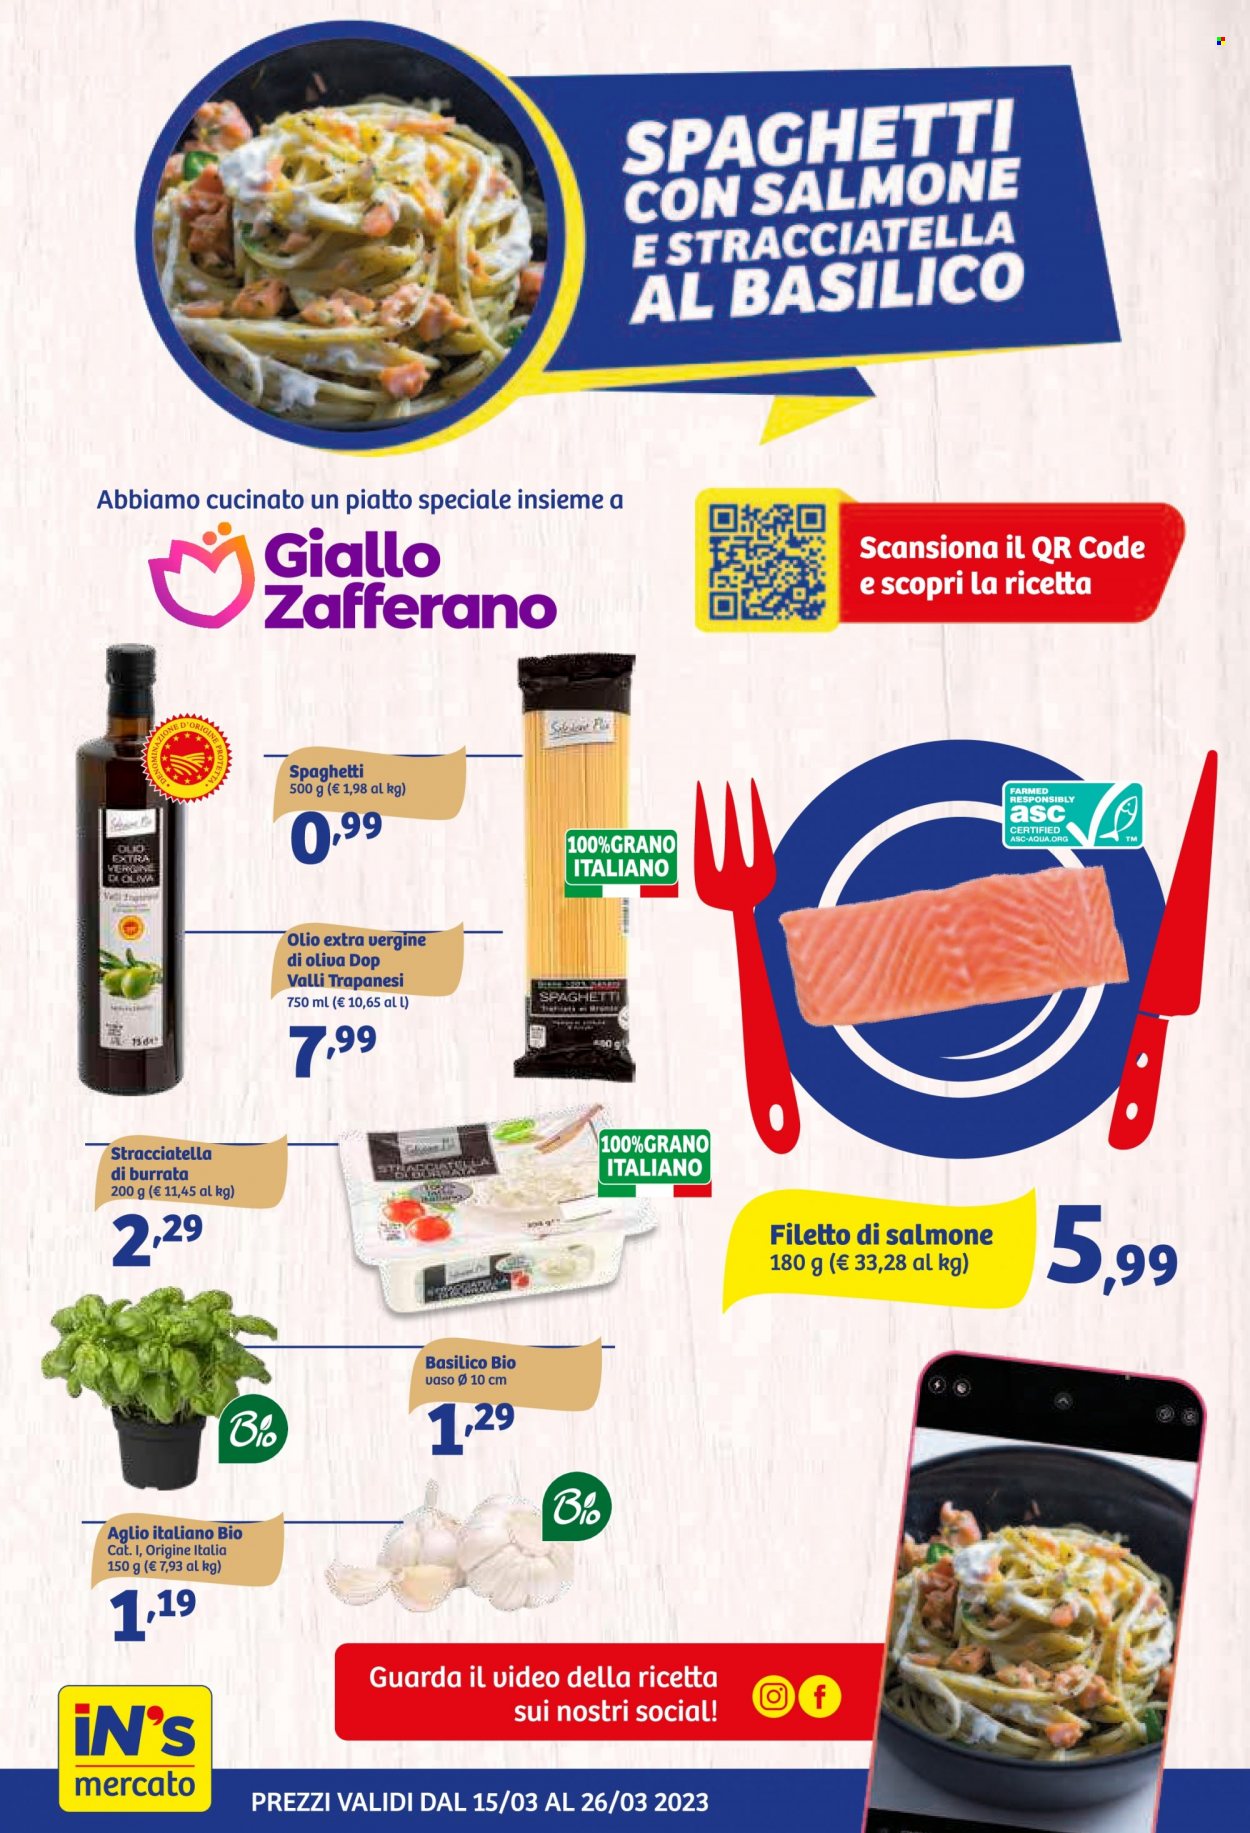 thumbnail - Volantino iN's Mercato - 15/3/2023 - 26/3/2023 - Prodotti in offerta - aglio, formaggio, burrata, spaghetti, zafferano, olio, olio extra vergine di oliva. Pagina 4.